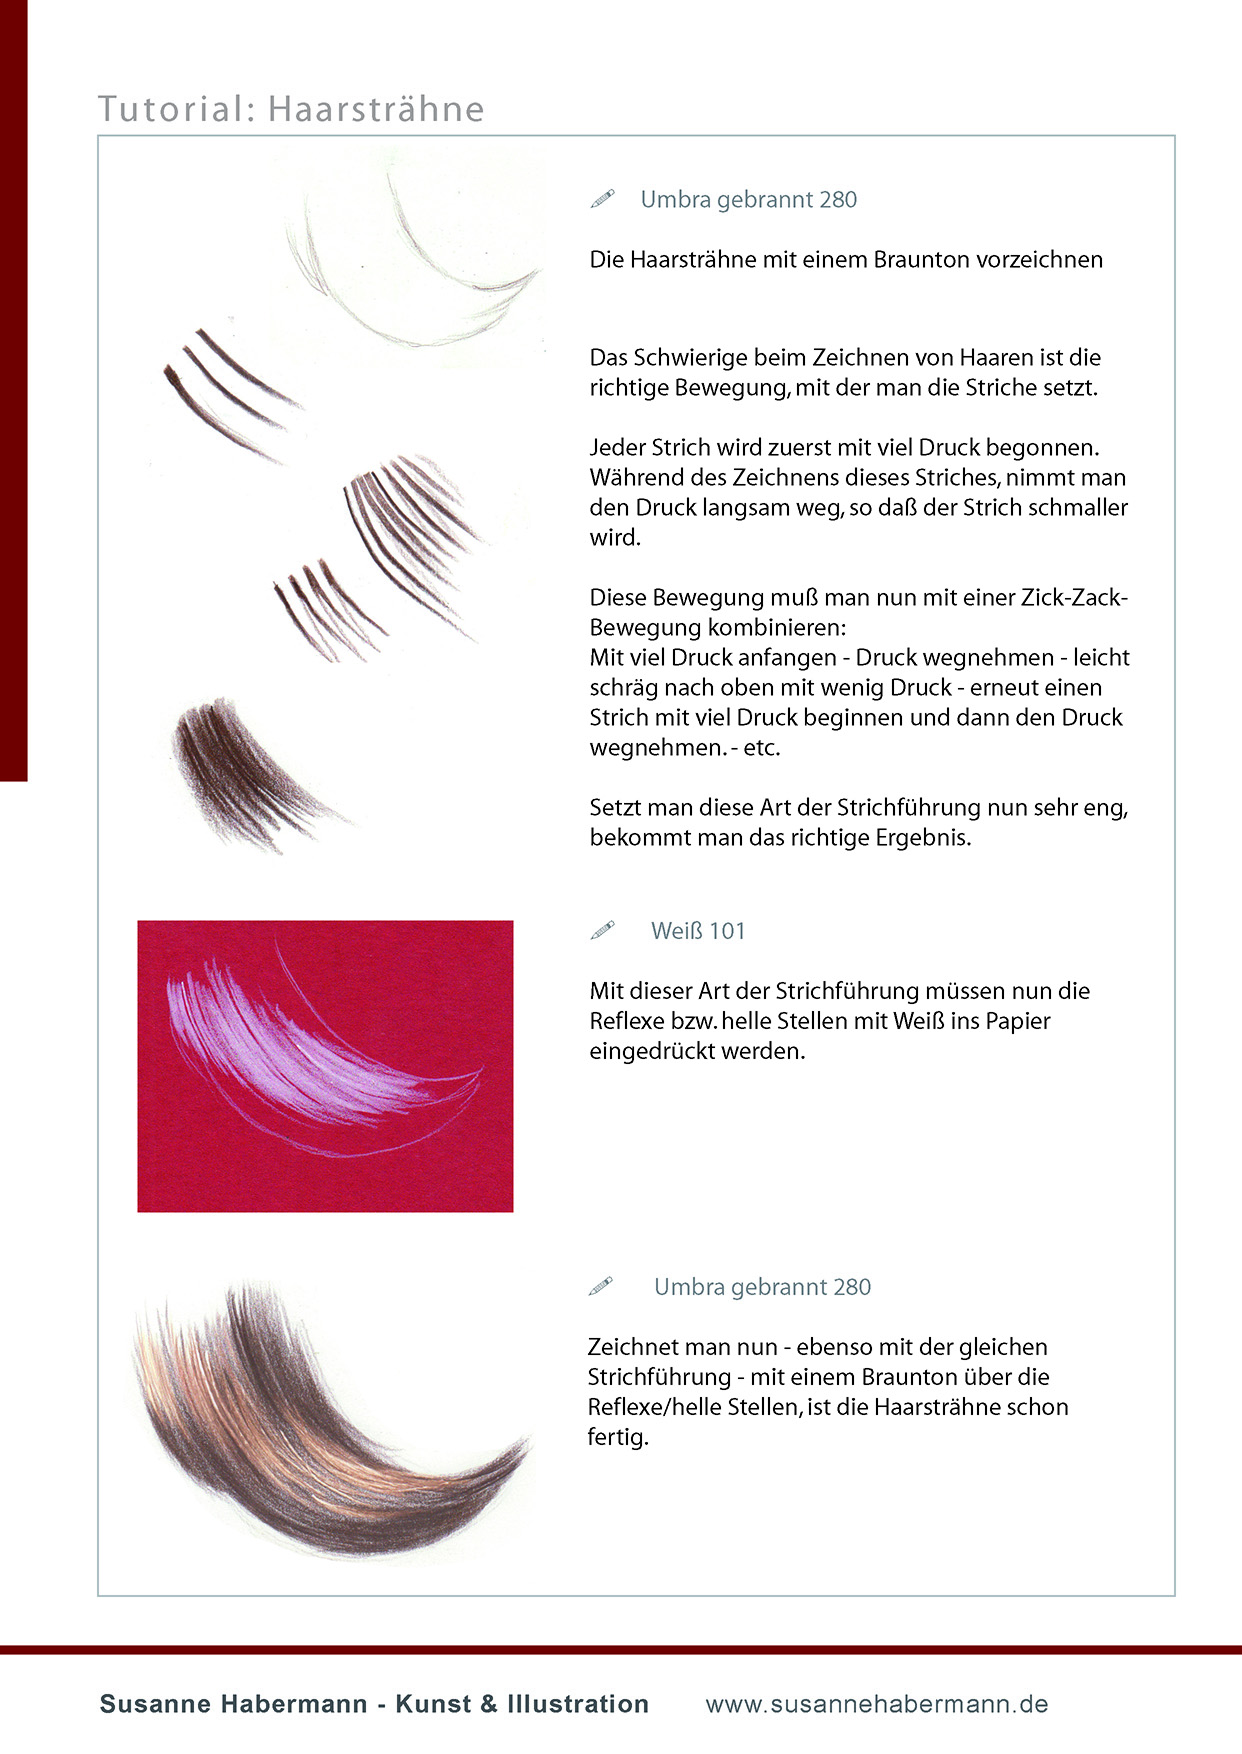 Tutorial Haarsträhne - Haarsträhne mit Buntstift zeichnen - Schritt für Schritt -  Susanne Habermann Kunst & Illustration - Zeichnen lernen